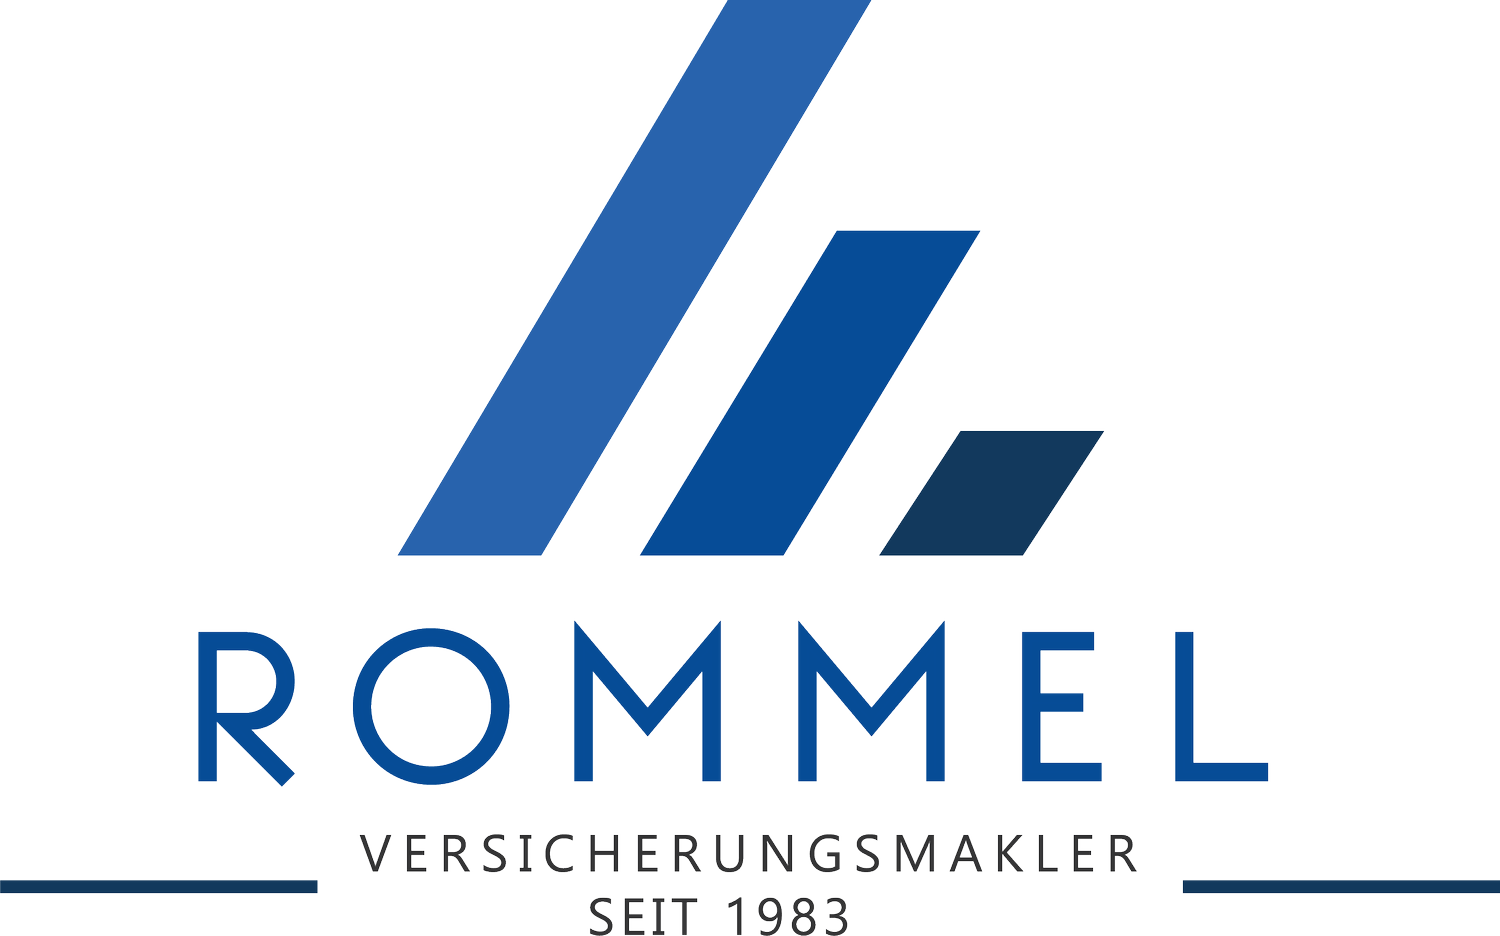 Rommel Versicherungsmakler GmbH